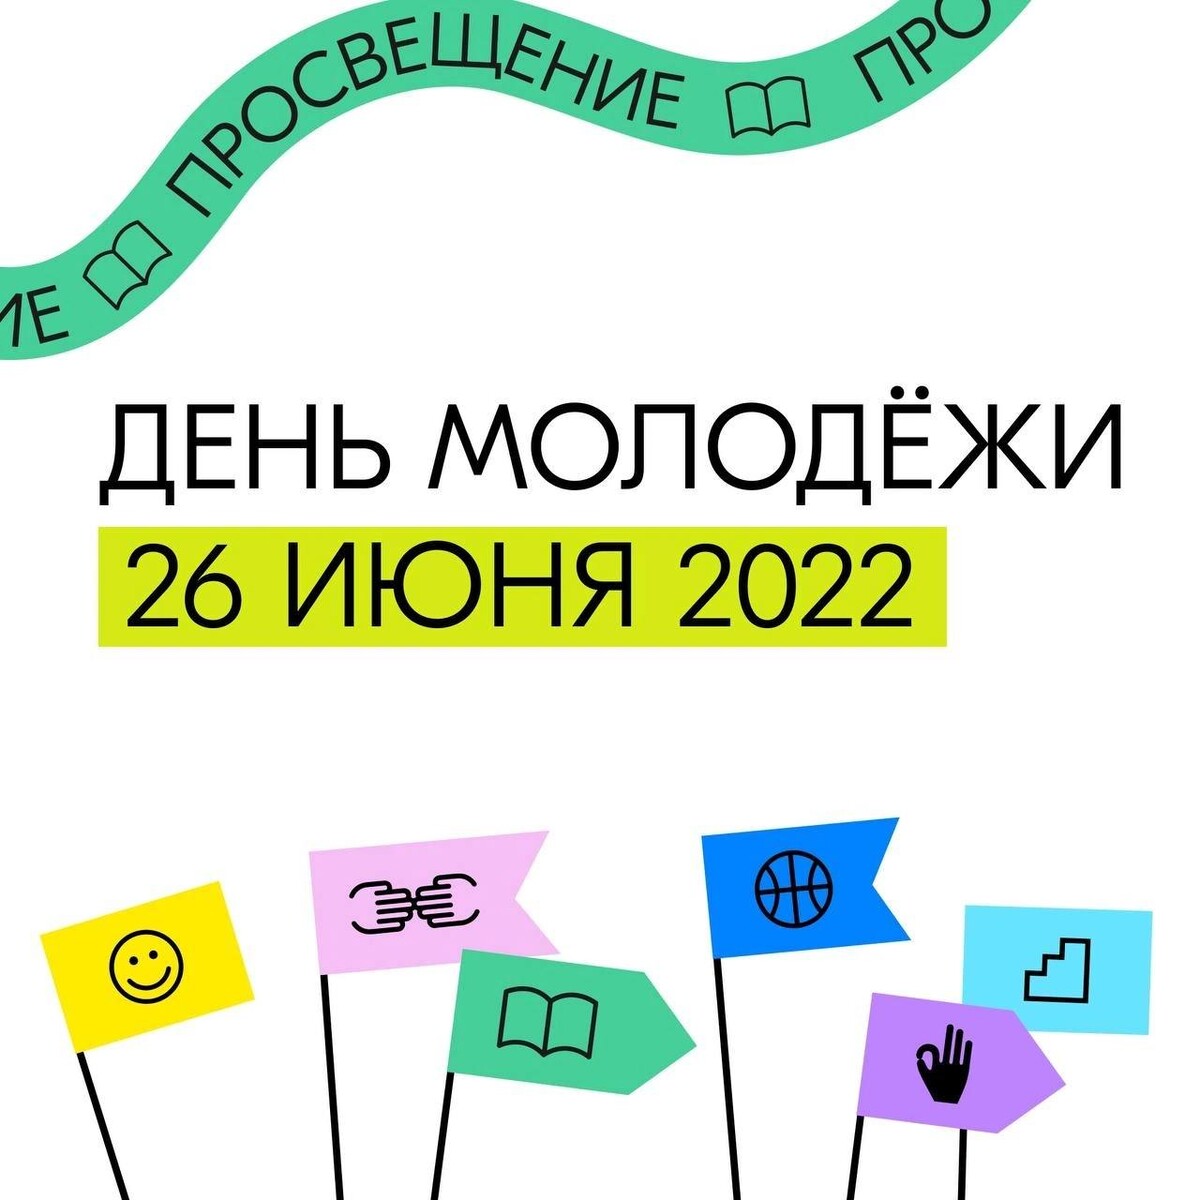 Разговоры о важном день молодежи 26 февраля. Последнее воскресенье июня день молодежи. Открытки 26 июня день молодежи. День молодежи 2022 Москва. День молодёжи в 2022 открытка.